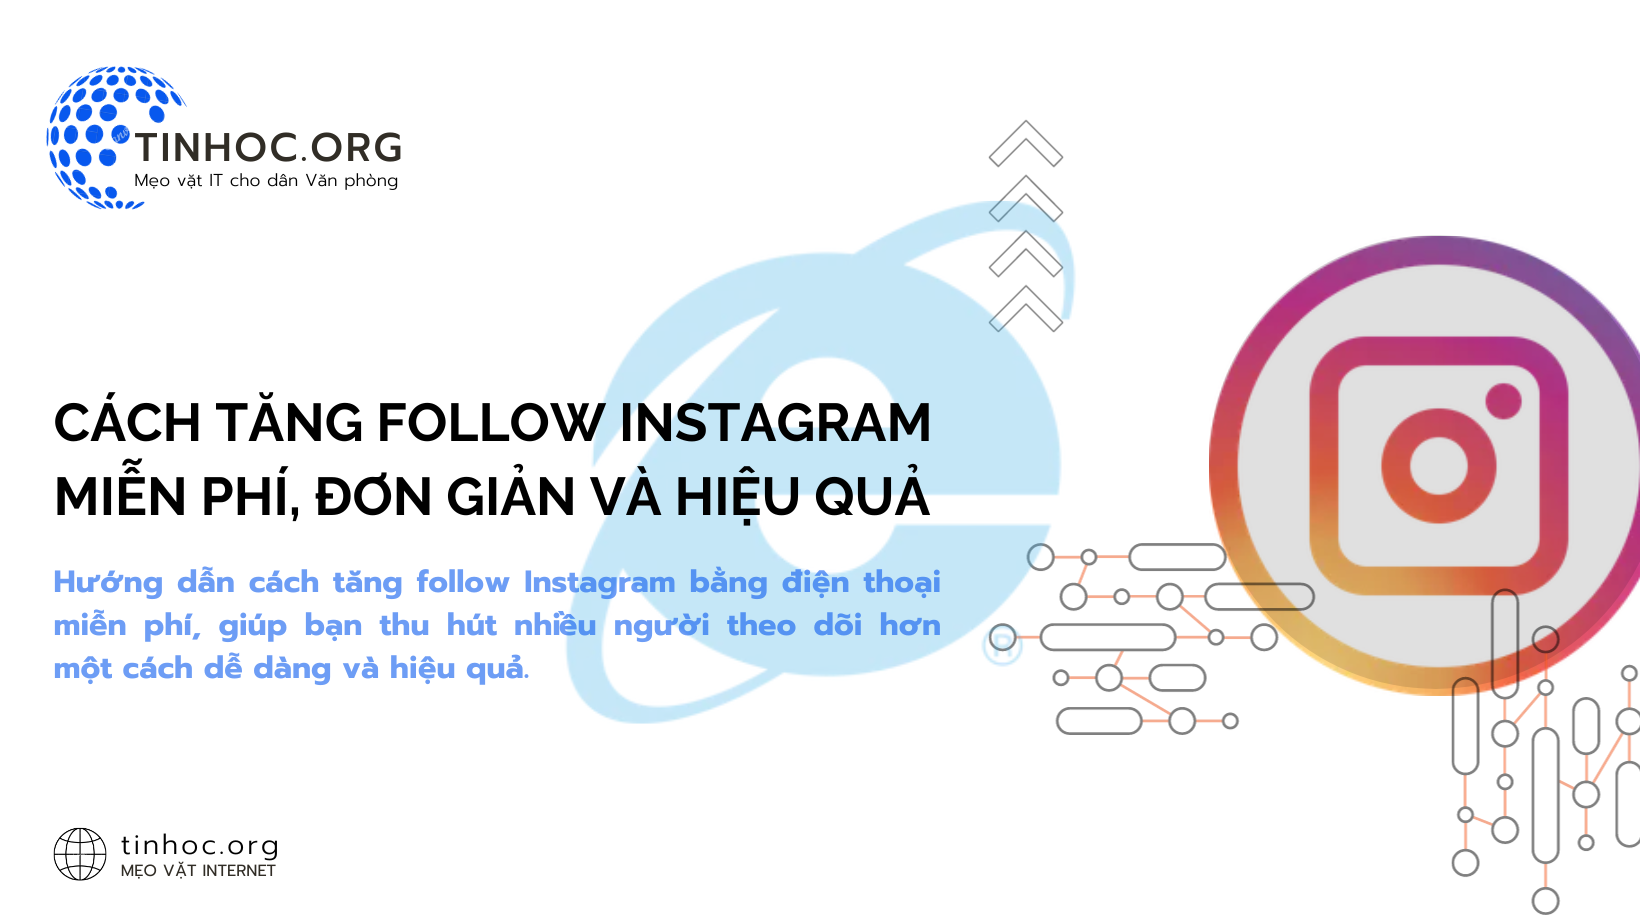 Hướng dẫn cách tăng follow Instagram bằng điện thoại miễn phí, giúp bạn thu hút nhiều người theo dõi hơn một cách dễ dàng và hiệu quả.